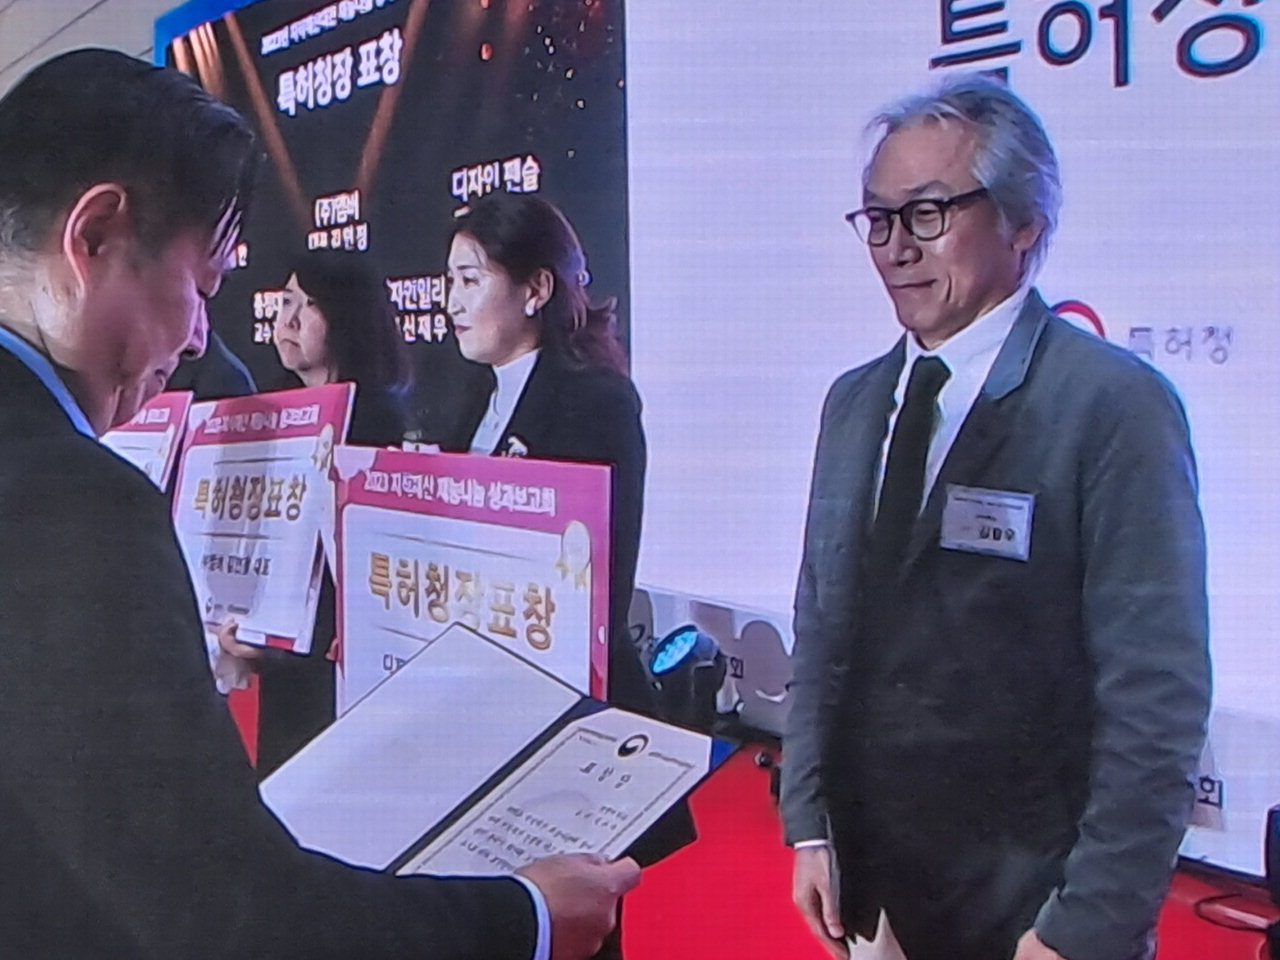 충청대 시각디자인과 김용우(오른쪽) 교수가 재능나눔 공로로 특허청장 표창을 수상했다.